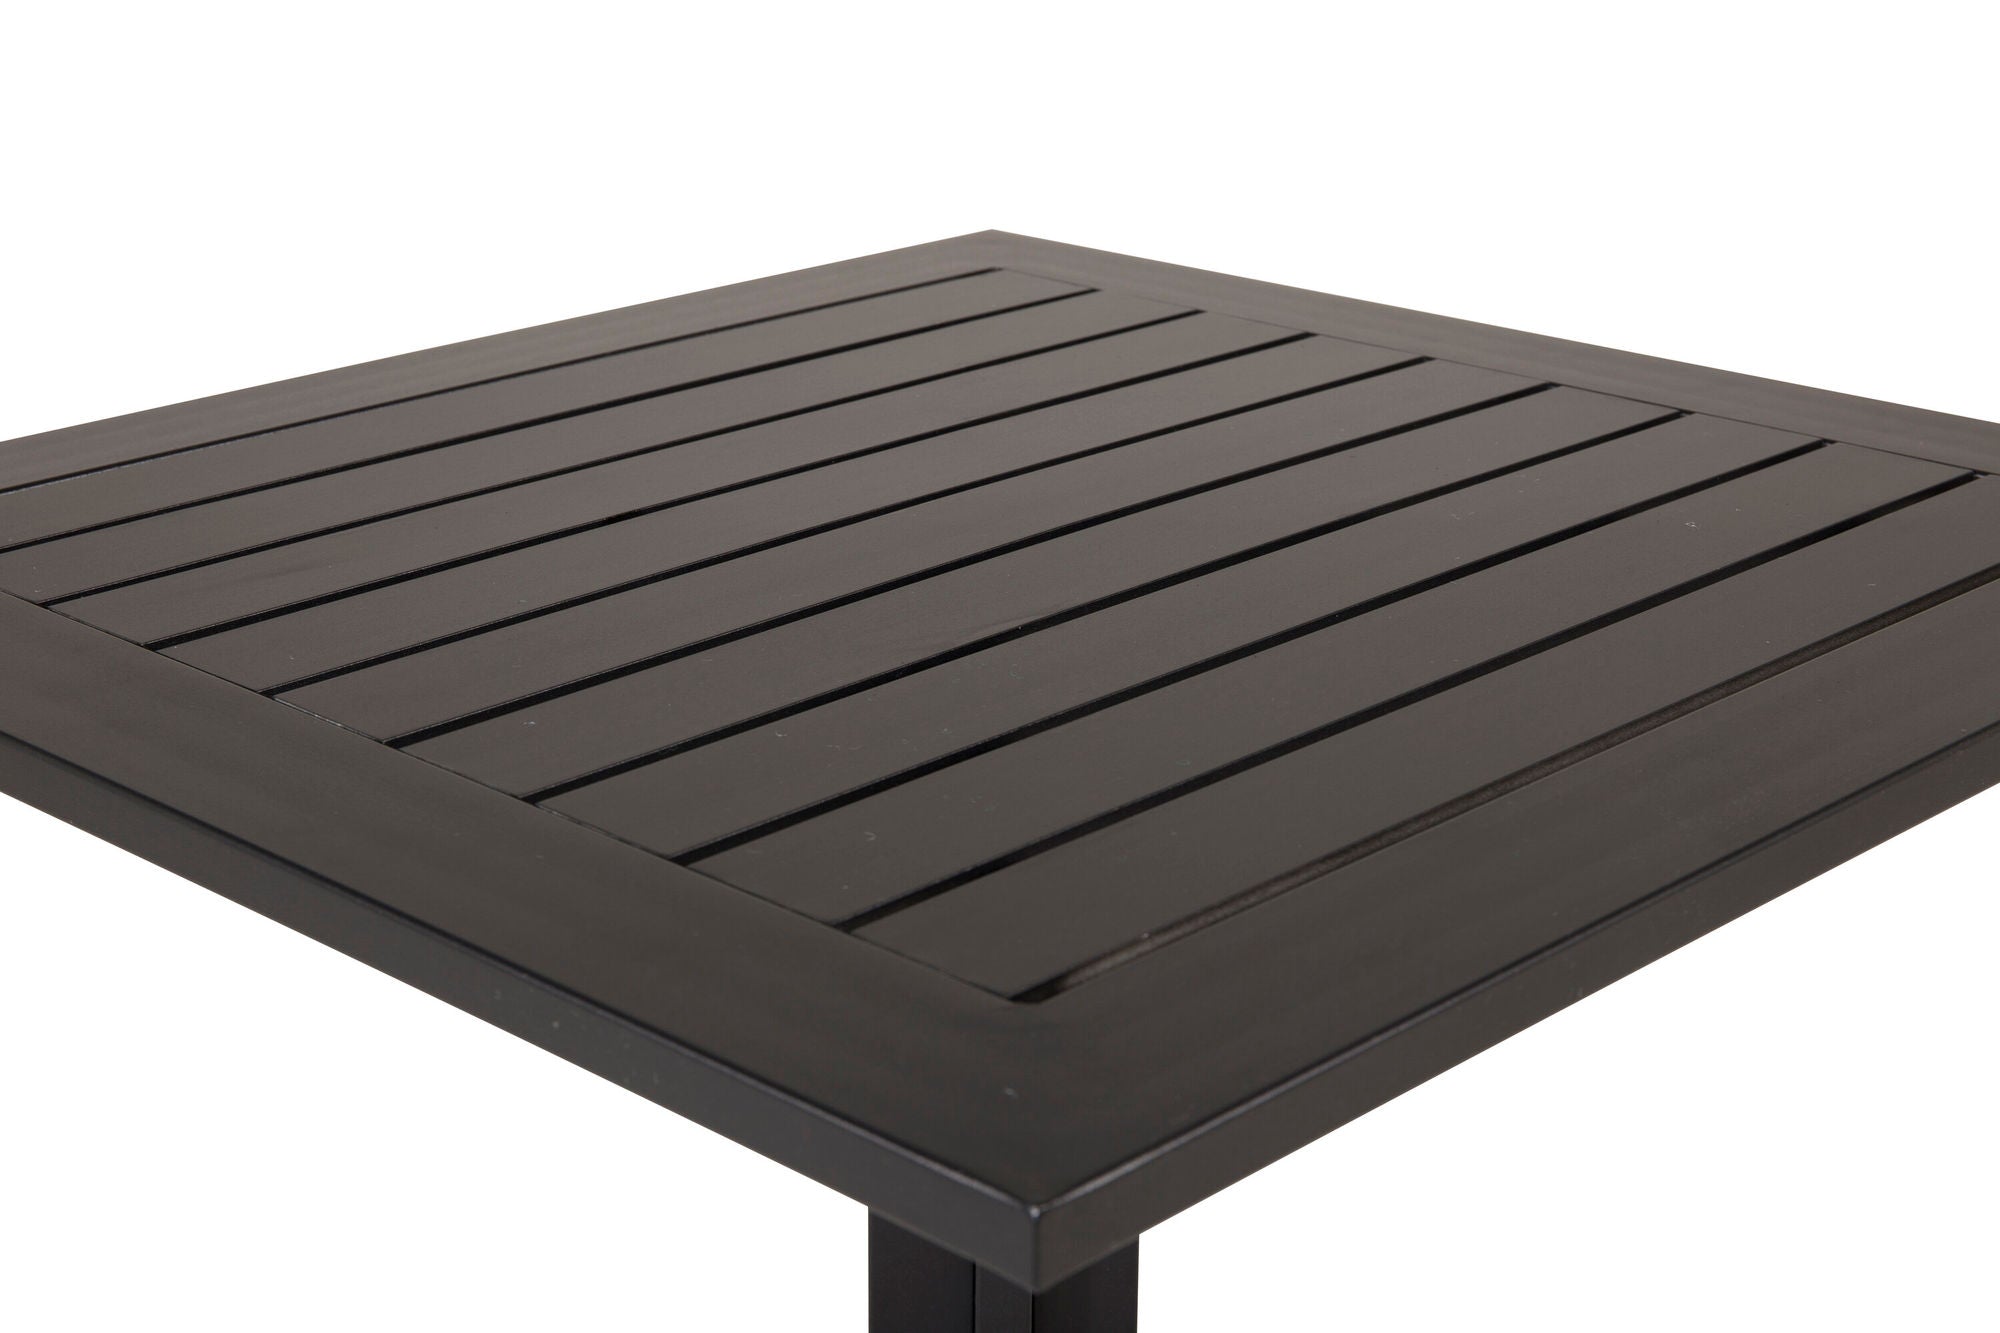 Venture Home Way - Café Table - Black / Black 70*70cm